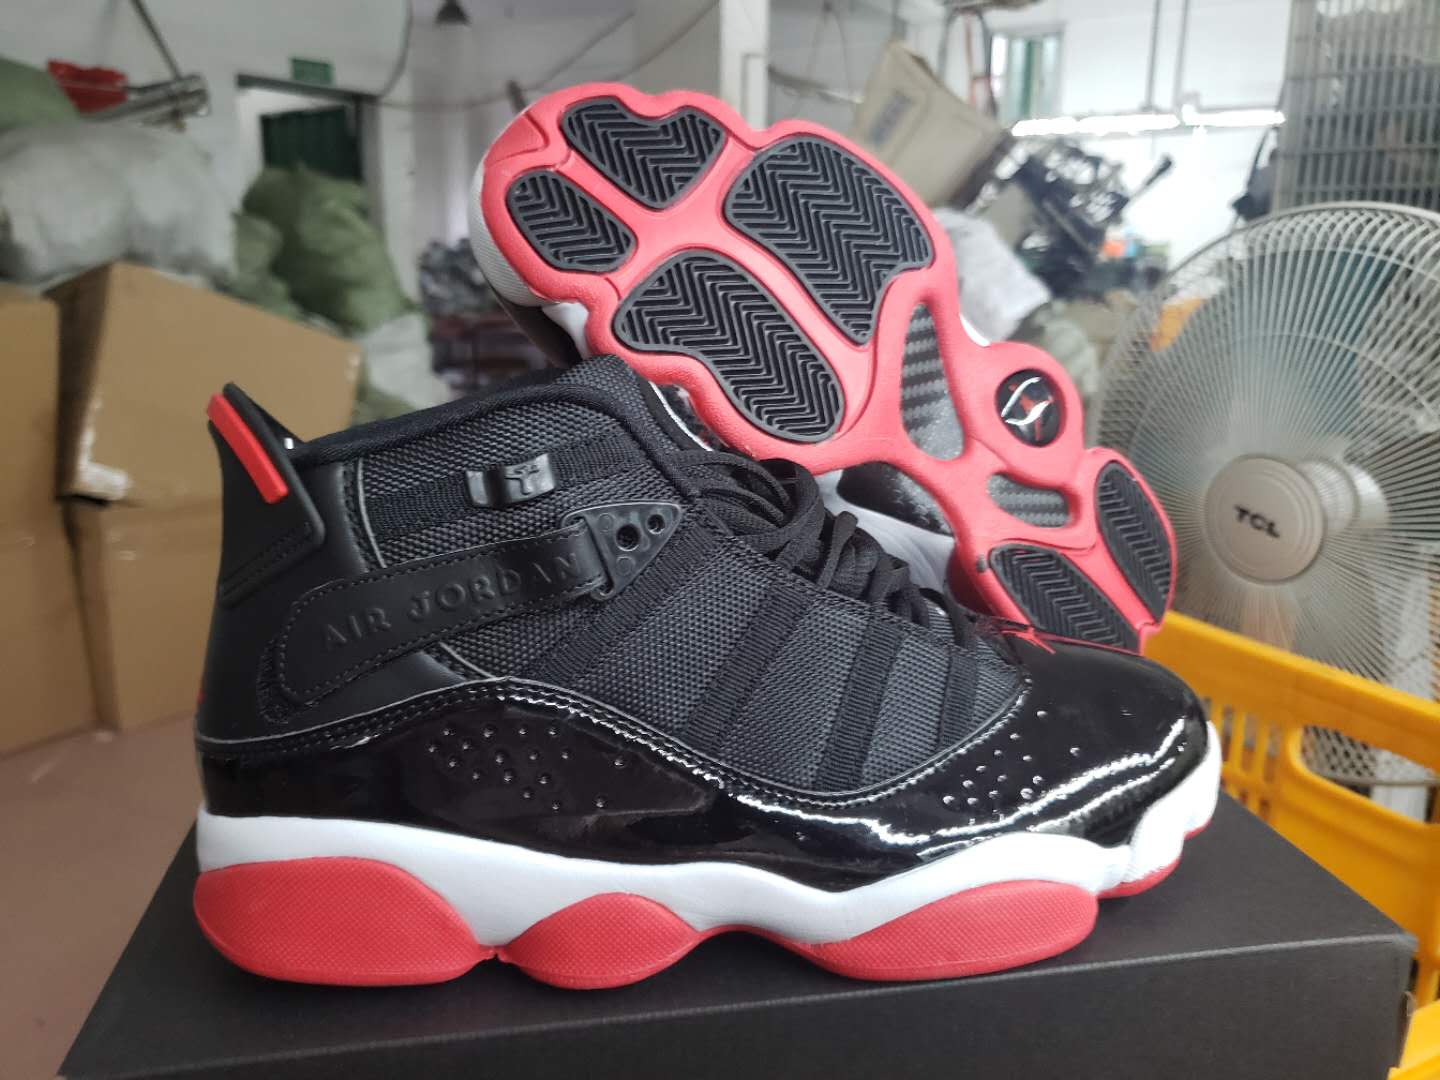 Air Jordan Six Rings of AJ11 Black Red Shoes